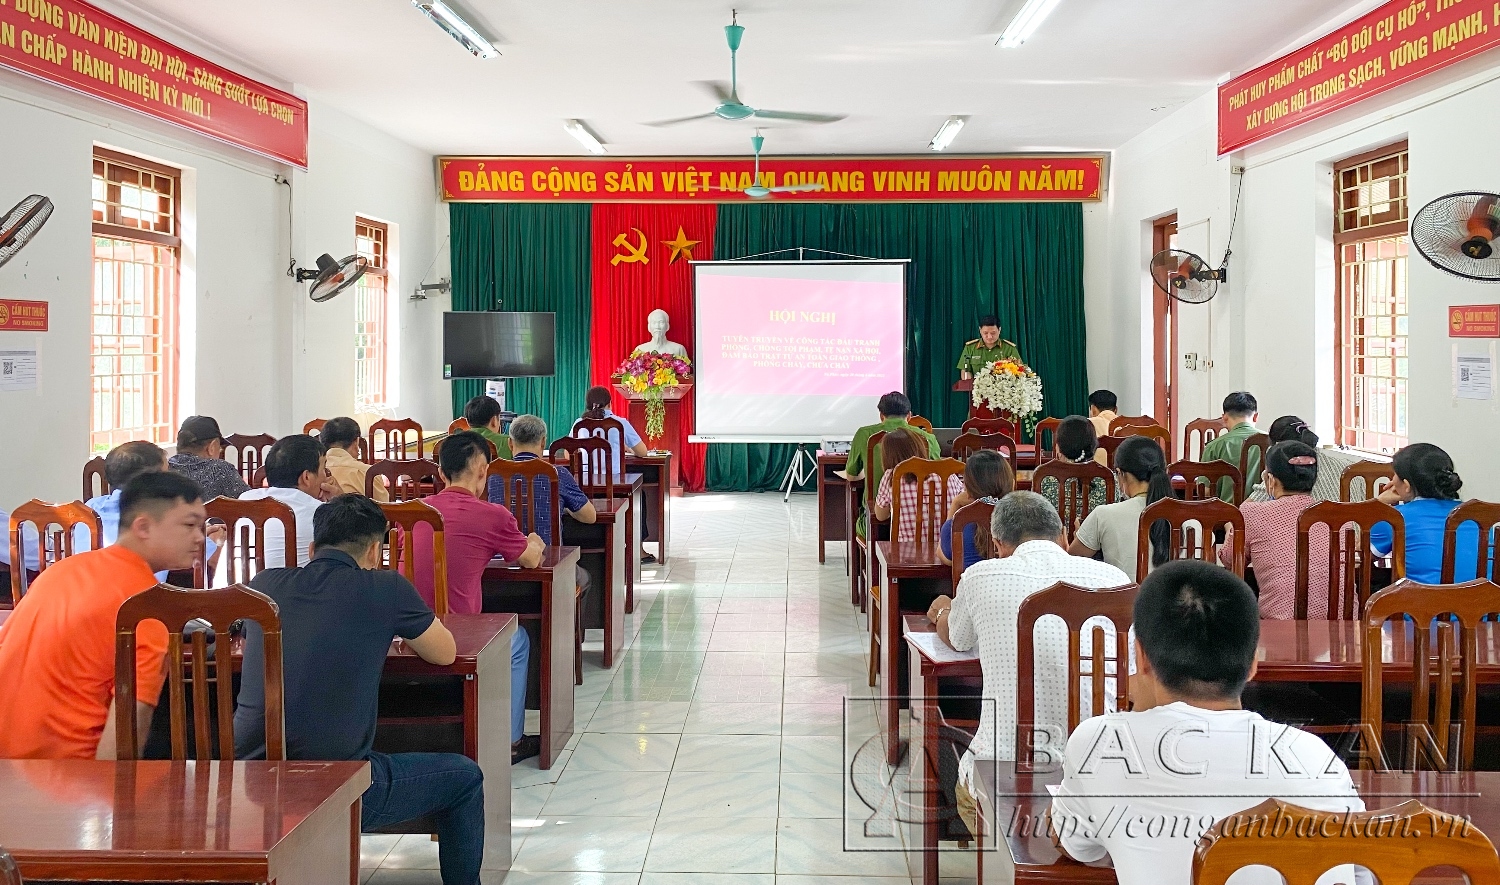  Hội nghị tuyên truyền pháp luật được tổ chức tại UBND thị trấn Nà Phặc, huyện Ngân Sơn.